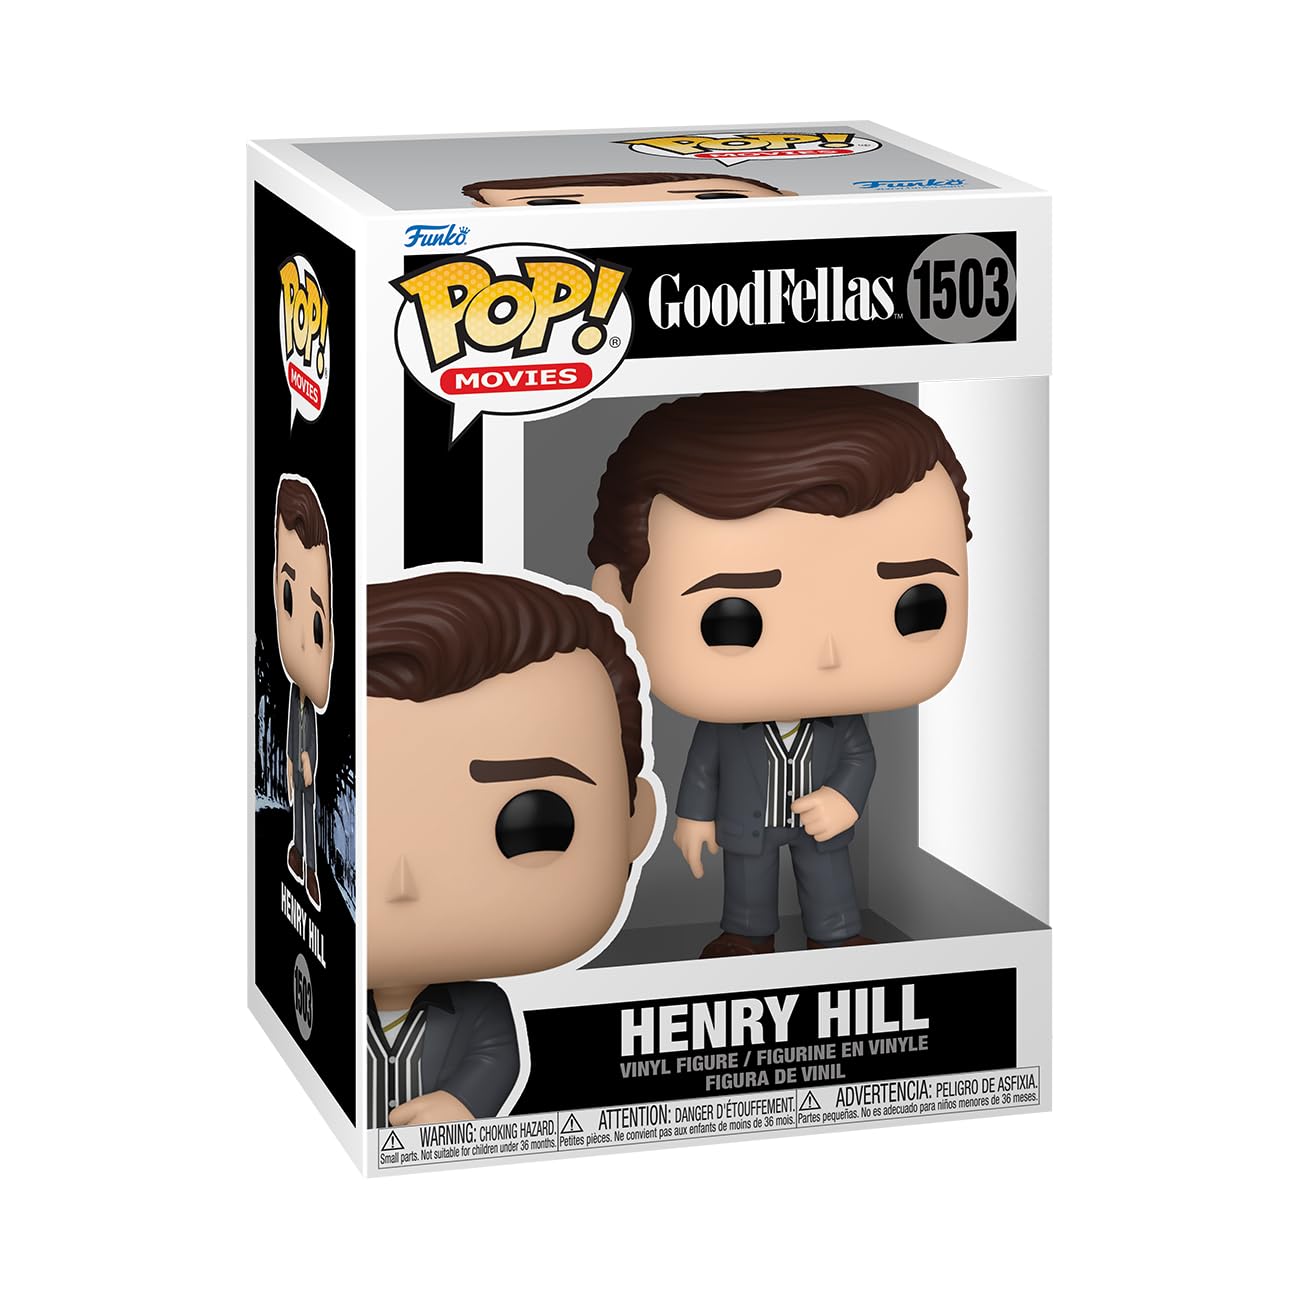 Goodfellas - Henry Hill #1503